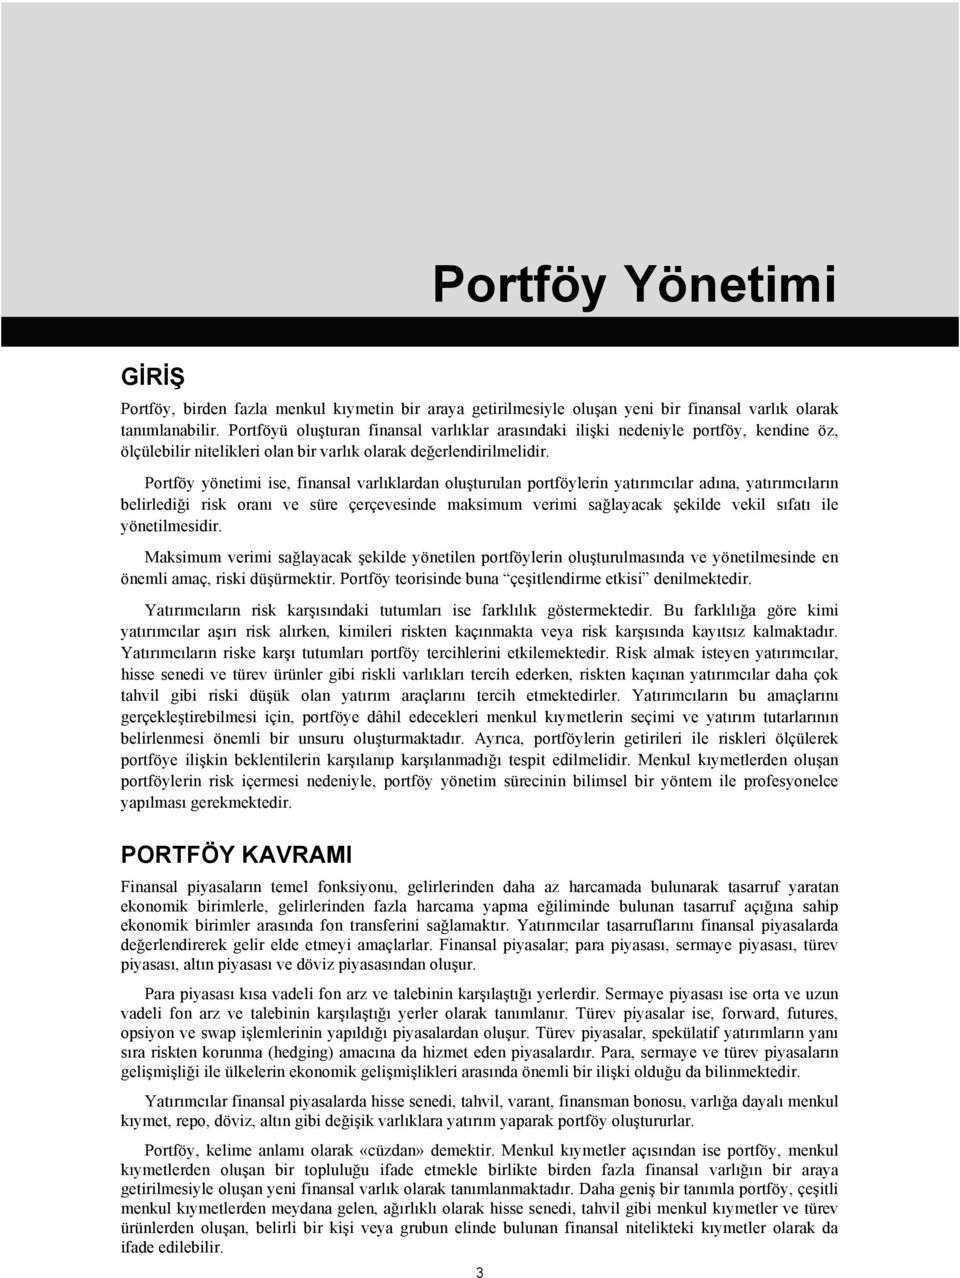 Portföy yönetimi ise, finansal varlıklardan oluşturulan portföylerin yatırımcılar adına, yatırımcıların belirlediği risk oranı ve süre çerçevesinde maksimum verimi sağlayacak şekilde vekil sıfatı ile